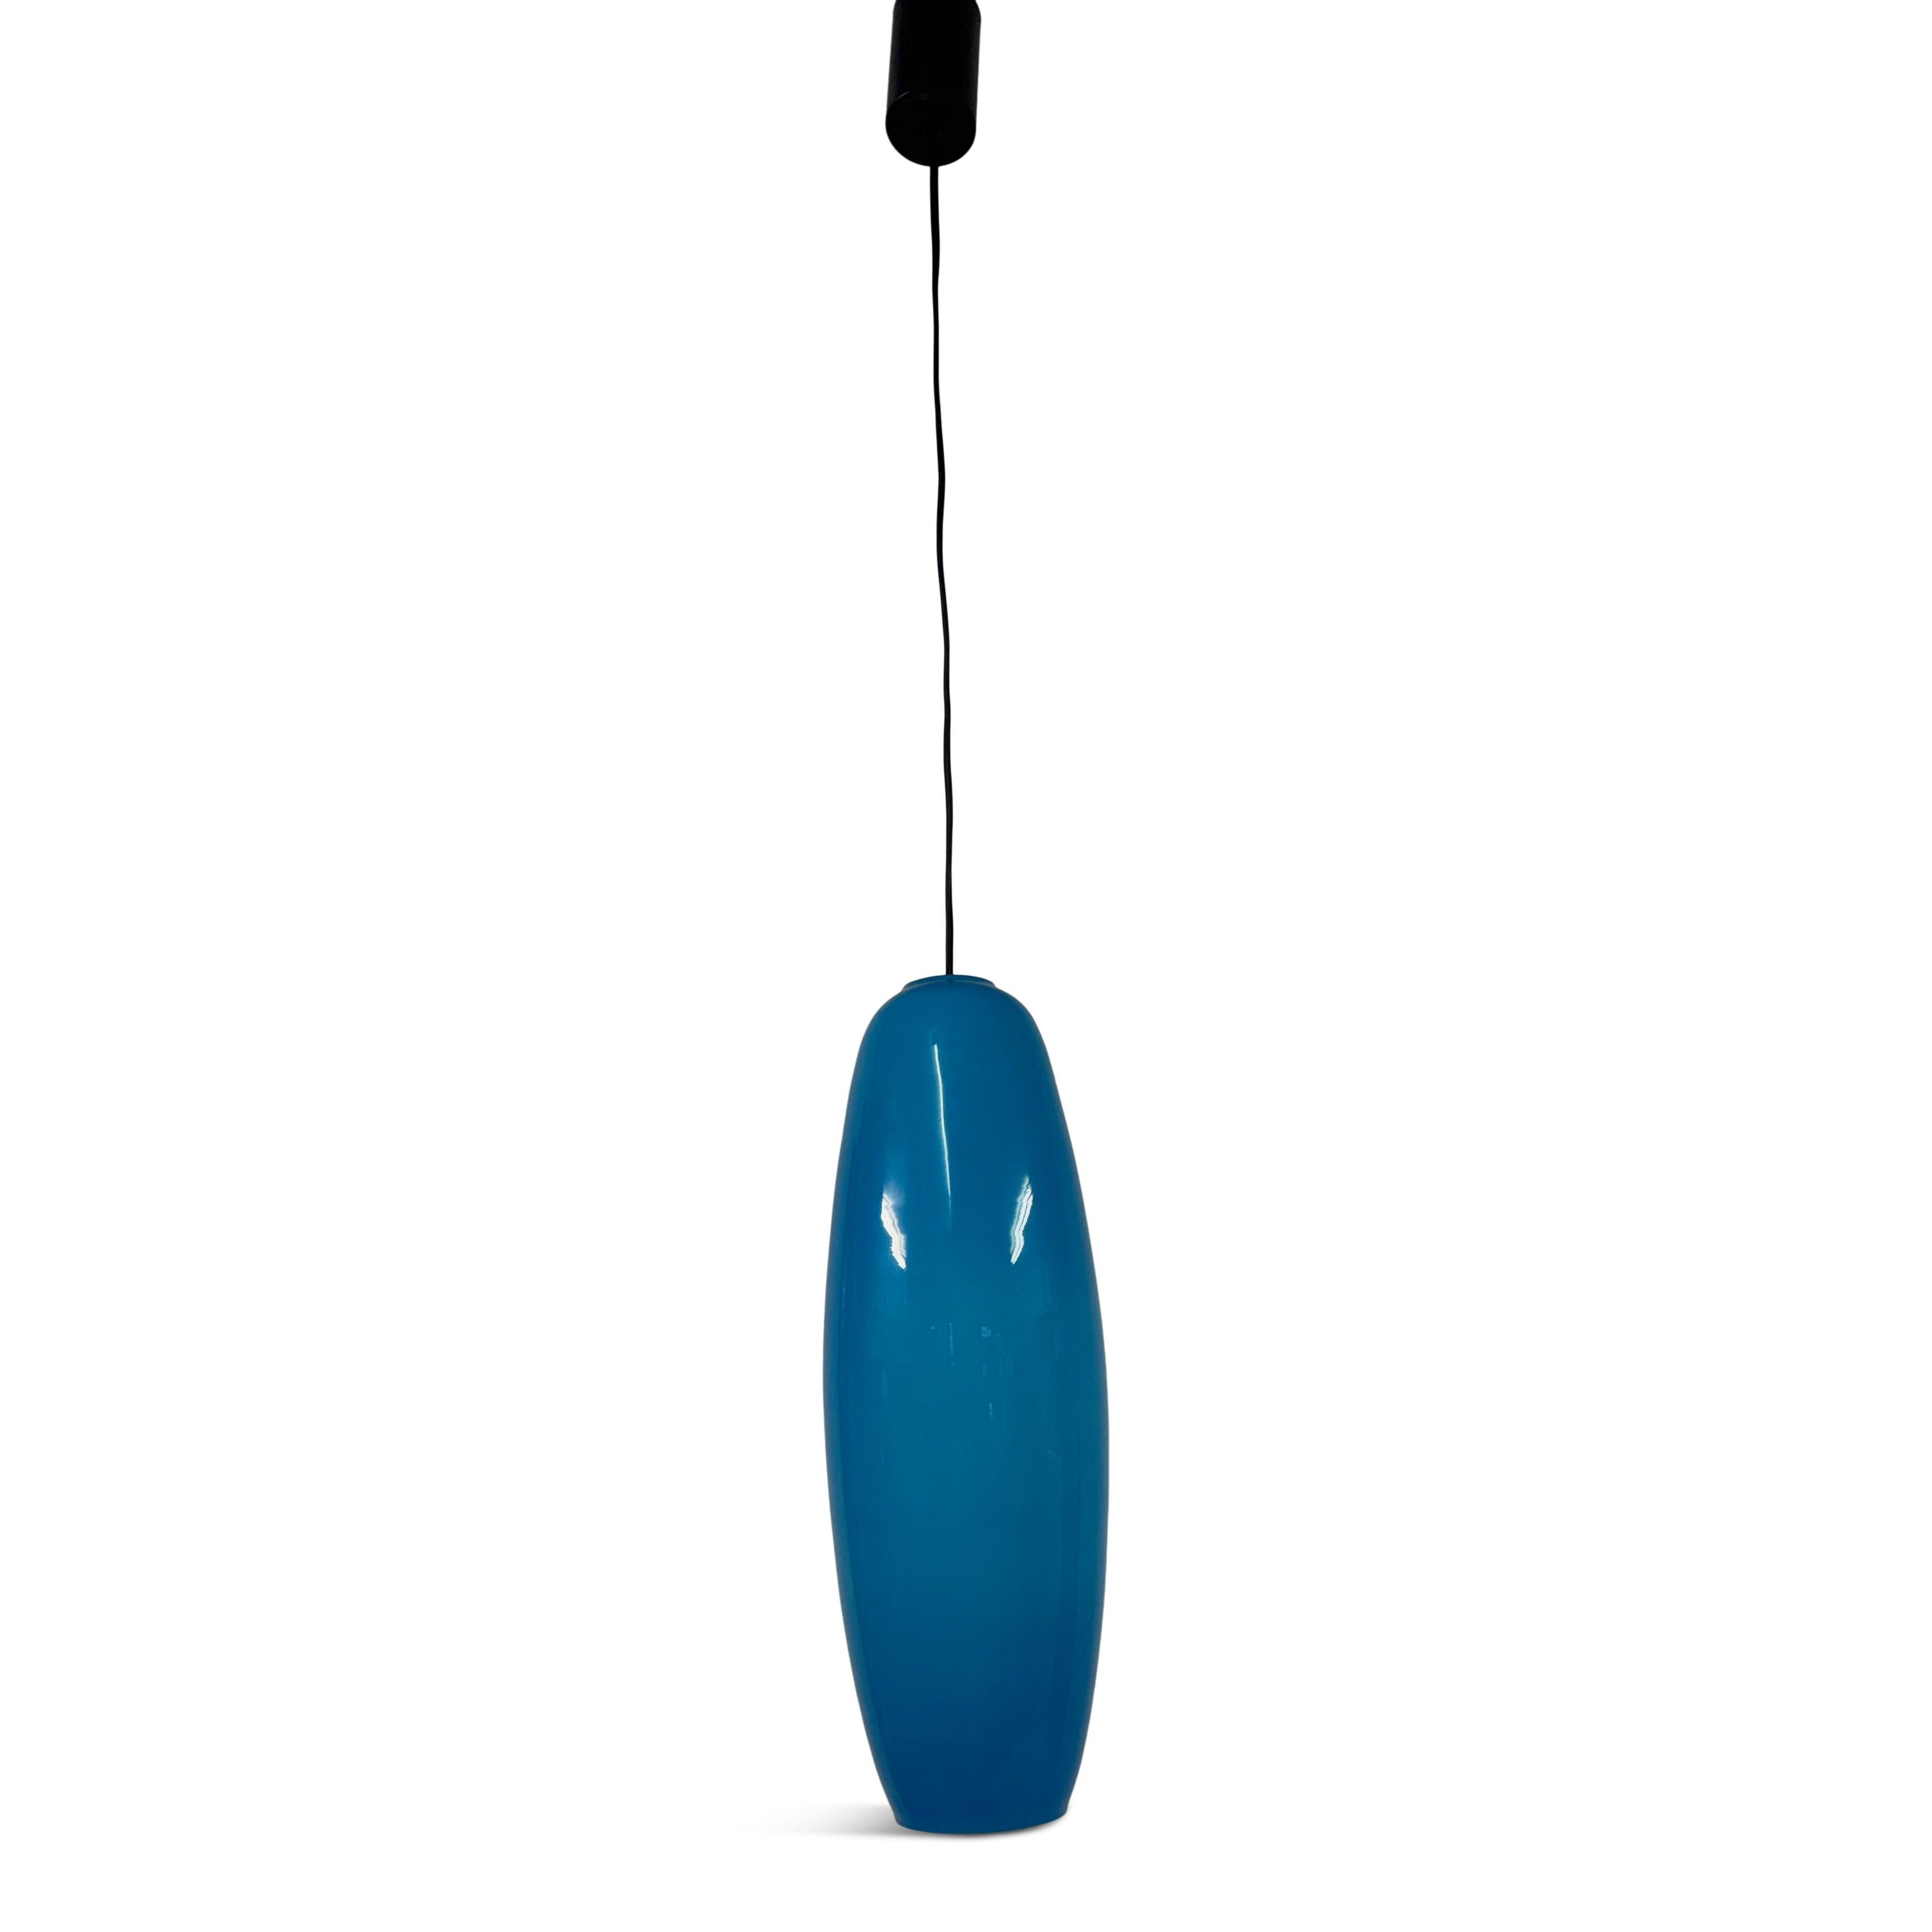 Anhänger

Blaues Glas

Die Abmessungen umfassen die Länge des Kabels, die geändert werden kann

Glasschirme misst 41cm

Italien 1960er Jahre


